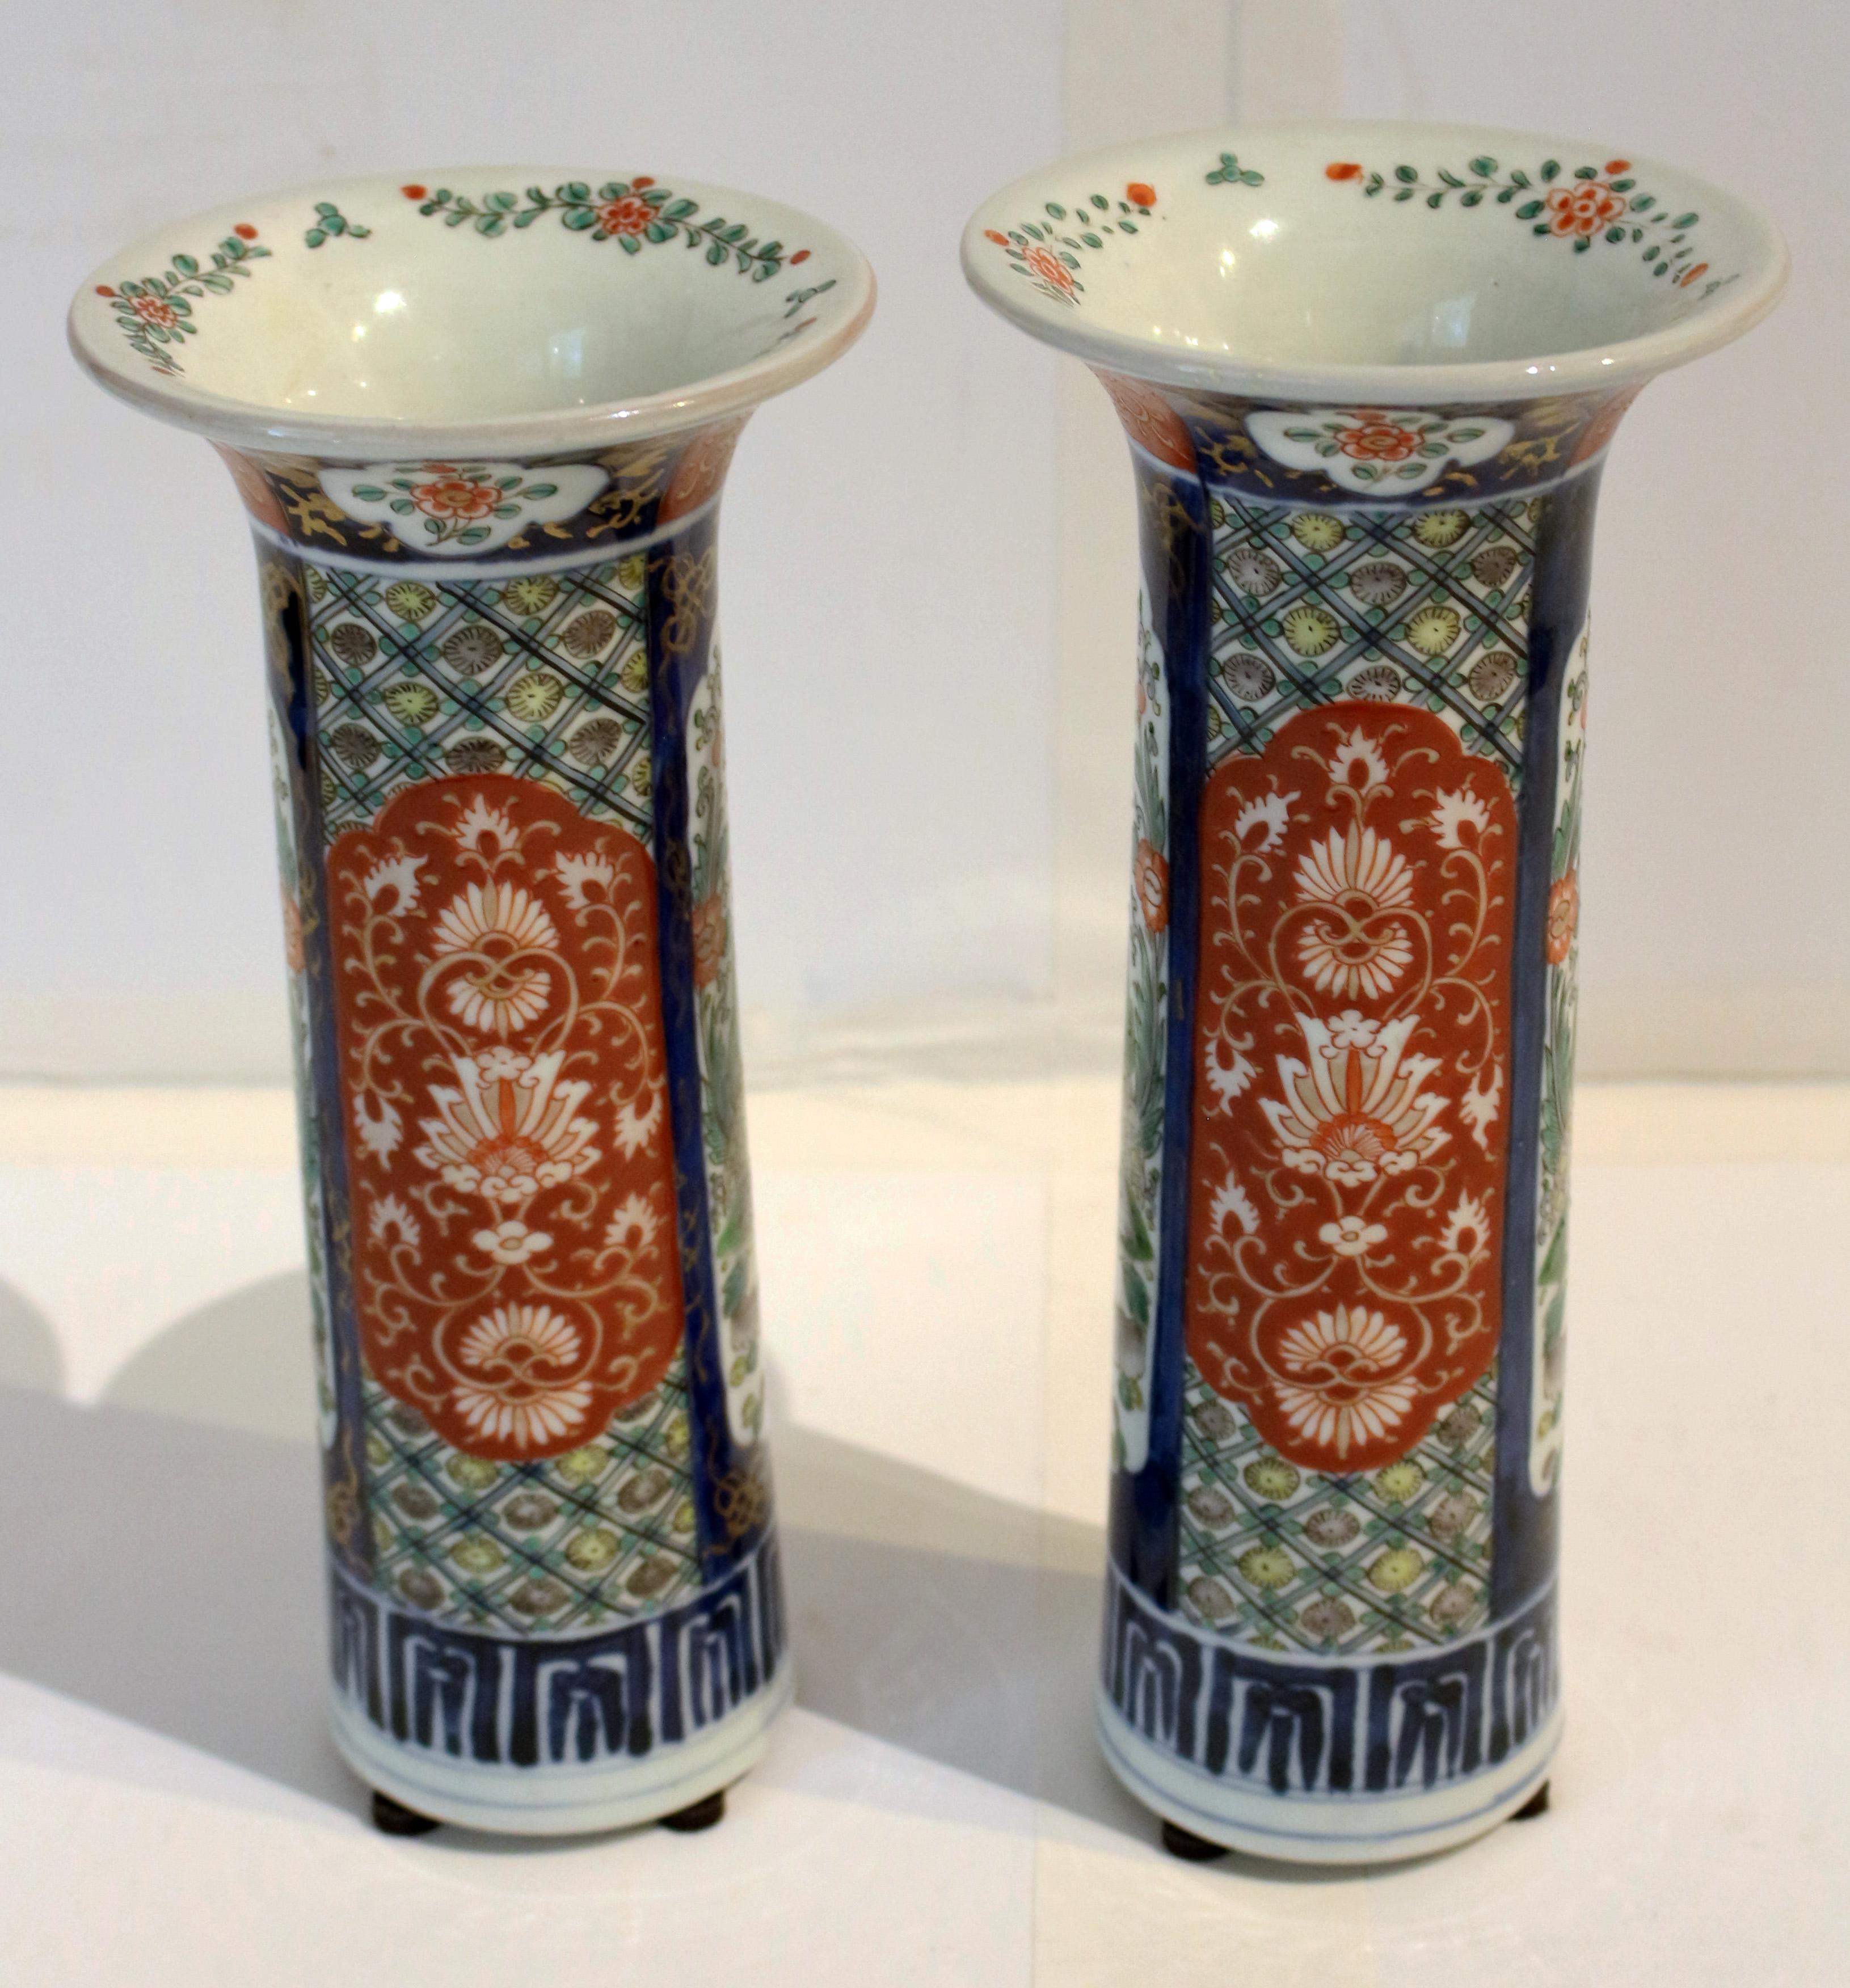 CIRCA 1860 Paar Imari-Vasen, Japan. Becherform; gut verziert mit Spalieren hinter stilisierten, orangefarbenen Blumenkartuschen, die sich mit Kartuschen mit einem Foo Dog in einem Garten abwechseln. Eine etwas kürzer als die andere. Ø 4 1/4